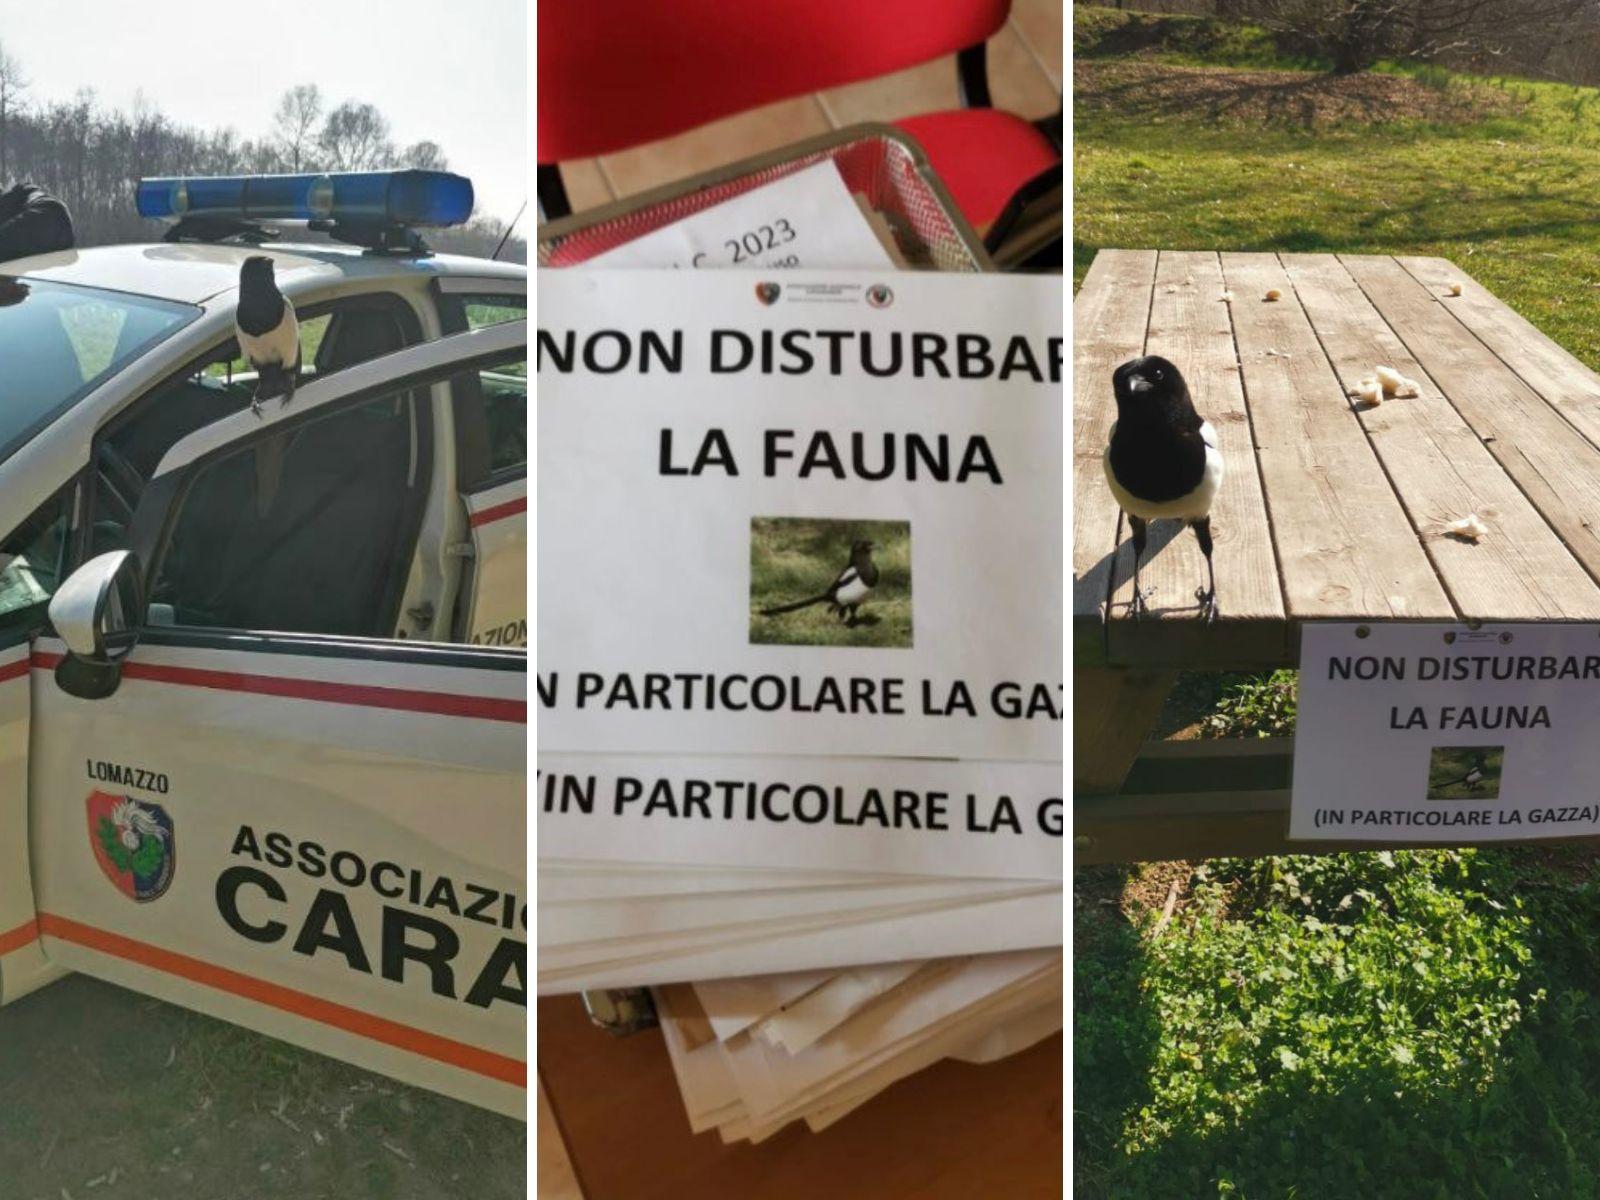 La gazza del parco Lura “posa” coi volontari che invitano a rispettare la fauna